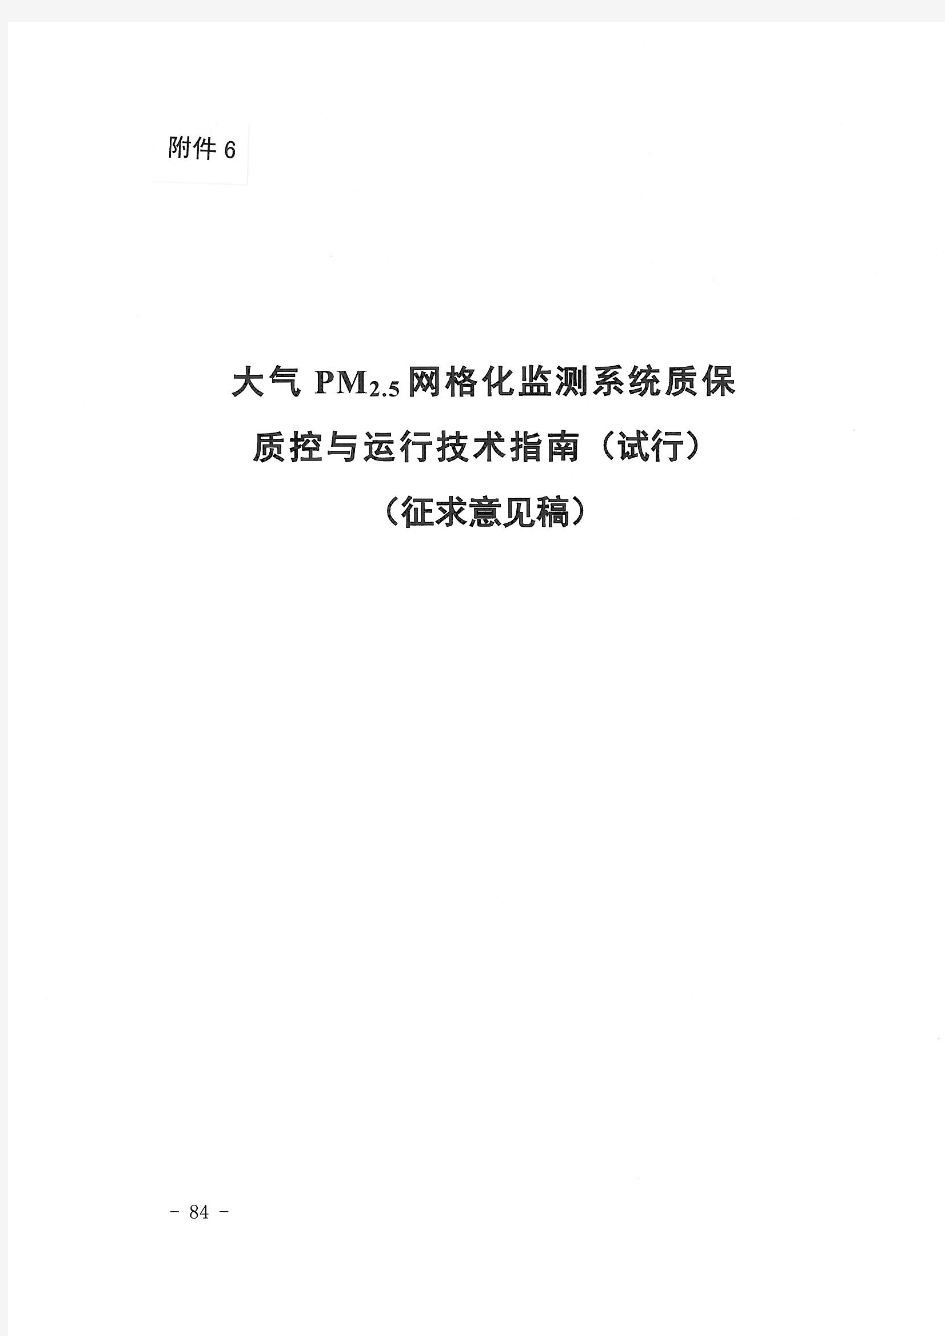 大气PM2.5网格化监测系统质保质控与运行技术指南(试行)(征求意见稿)